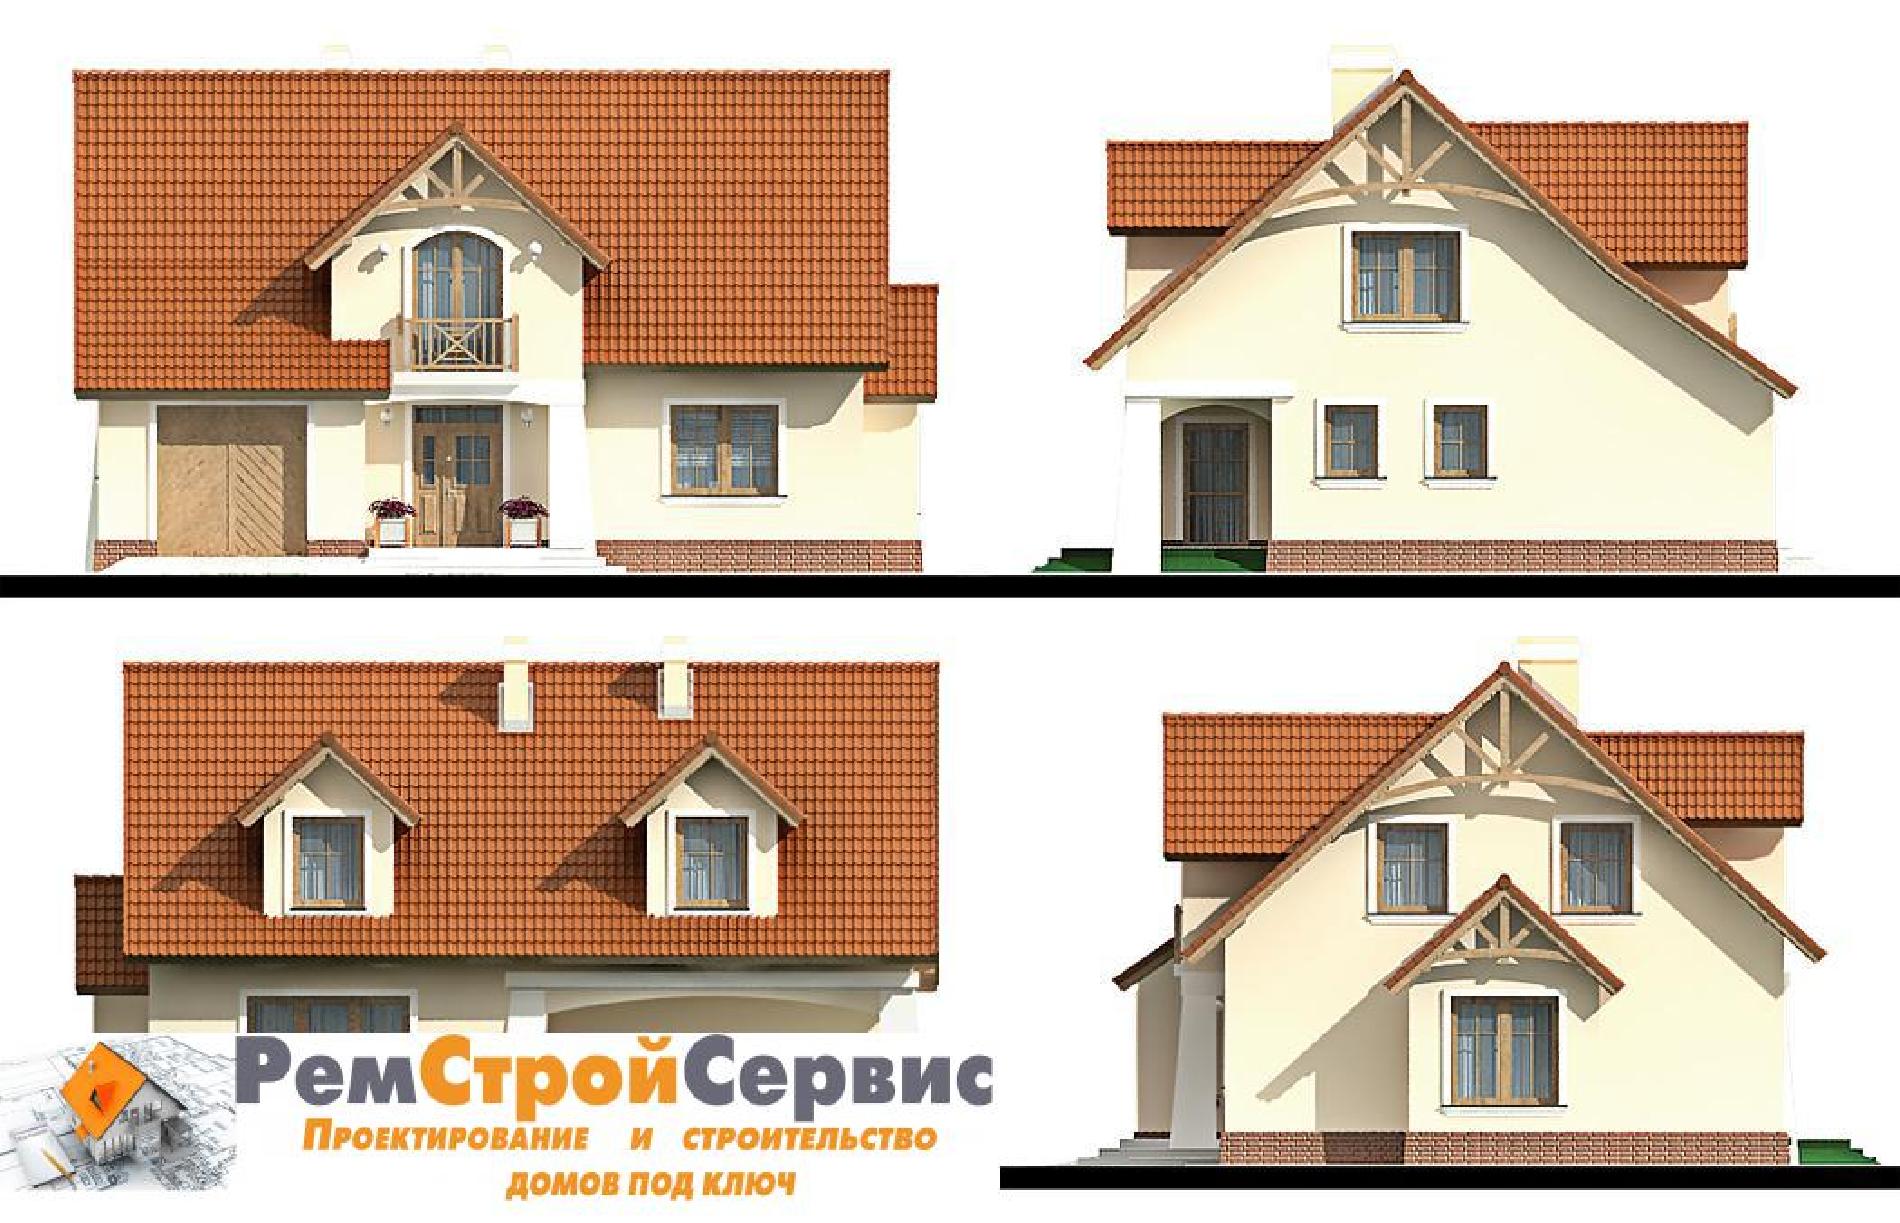 Фасады проекта дома №pl-417 pl-417_f1.jpg